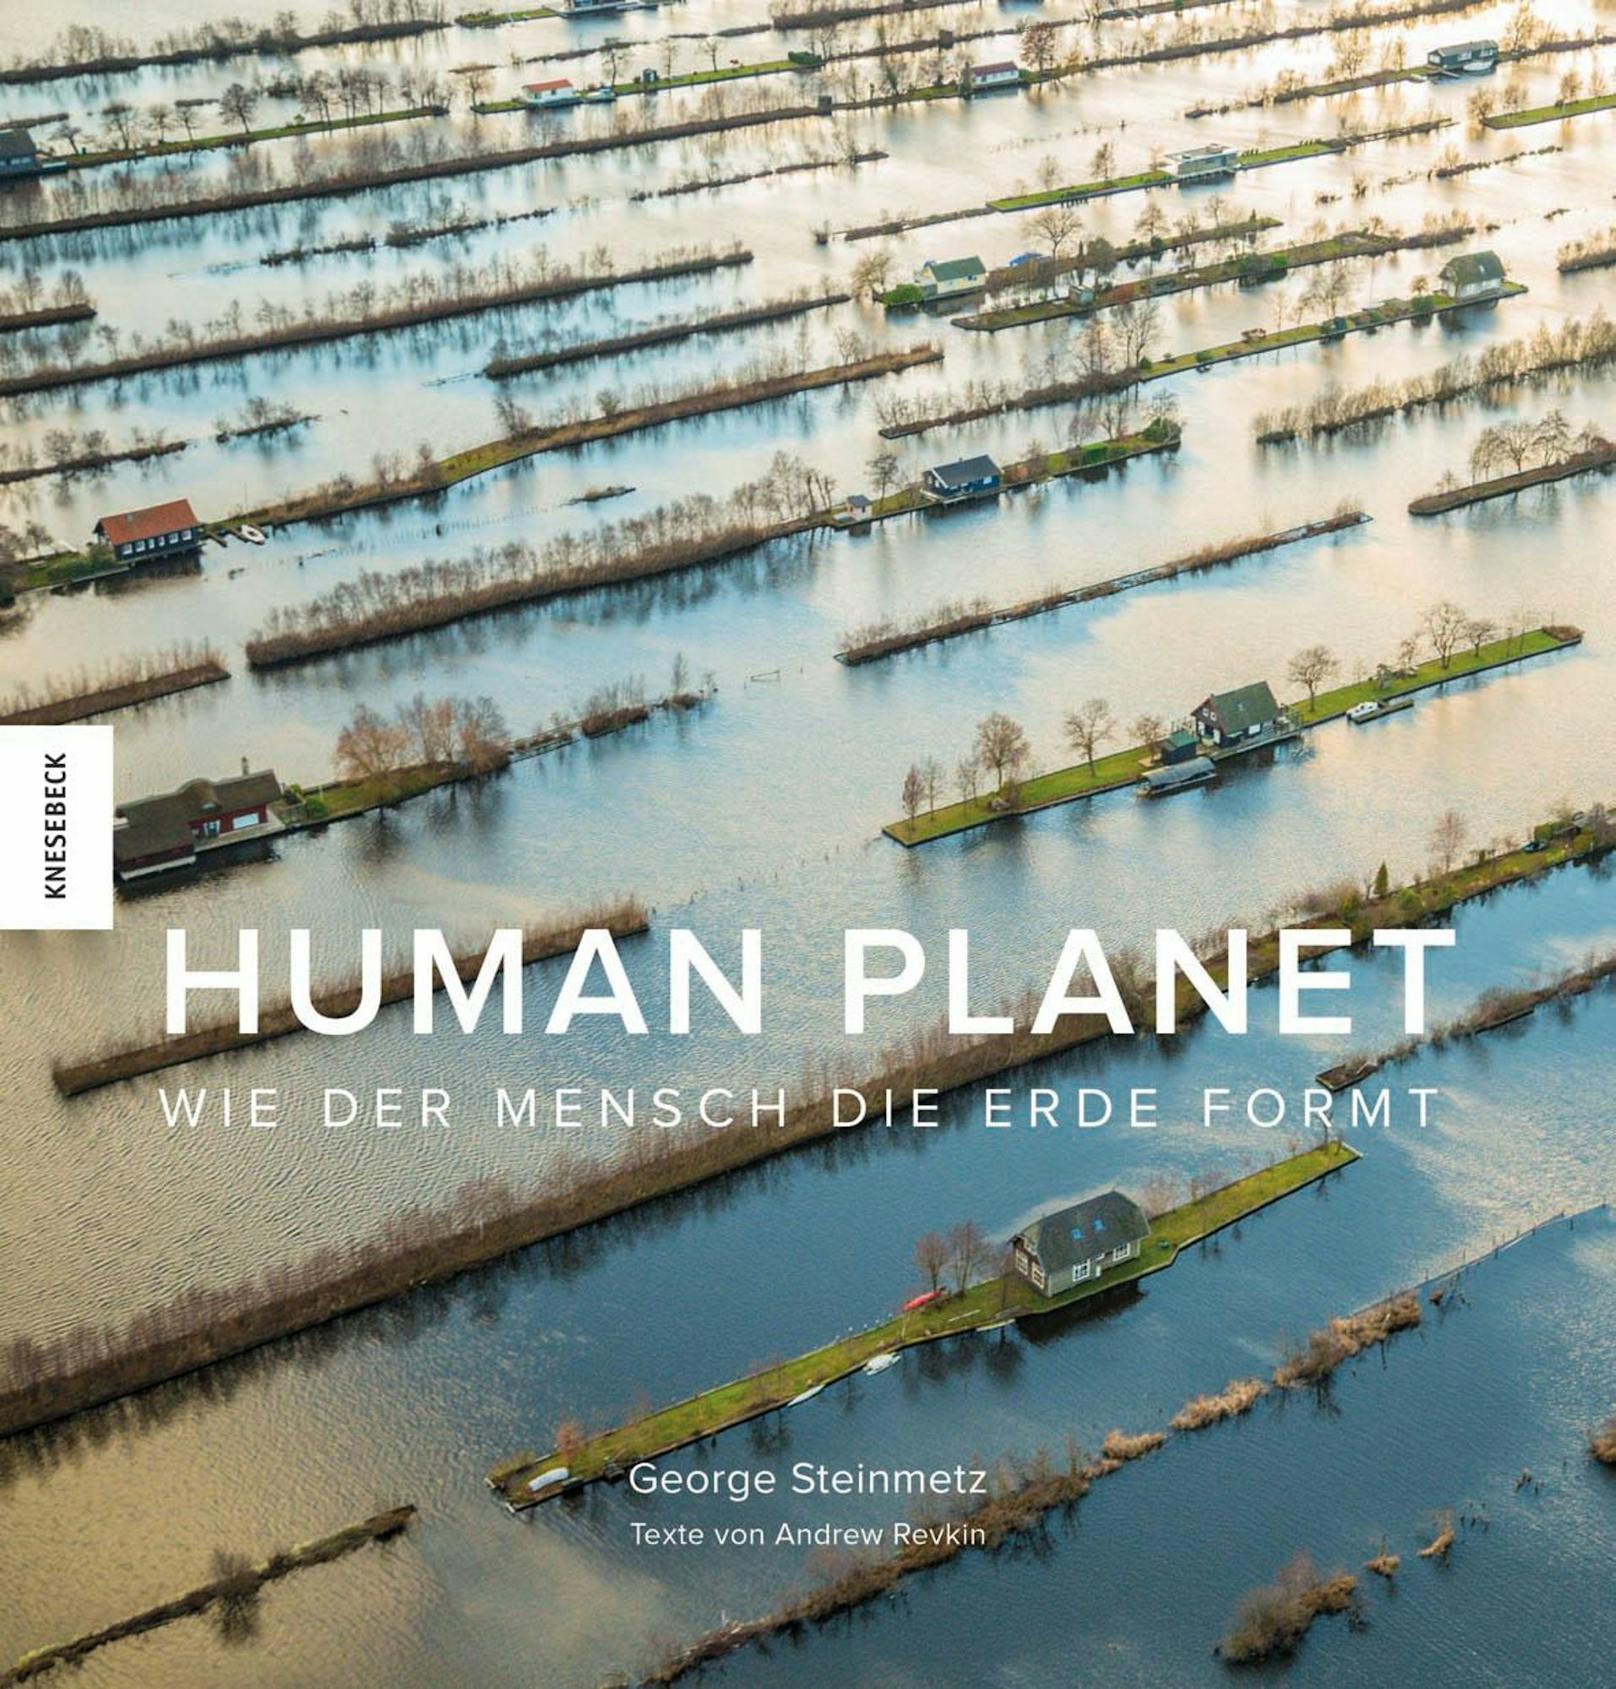 Georg Steinmetz &amp; Andrew Revkin: "Human Planet. Wie der Mensch die Erde formt".  Gebundener Bildband, 256 Seiten, Knesebeck-Verlag,  ISBN 978-3-95728-394-8